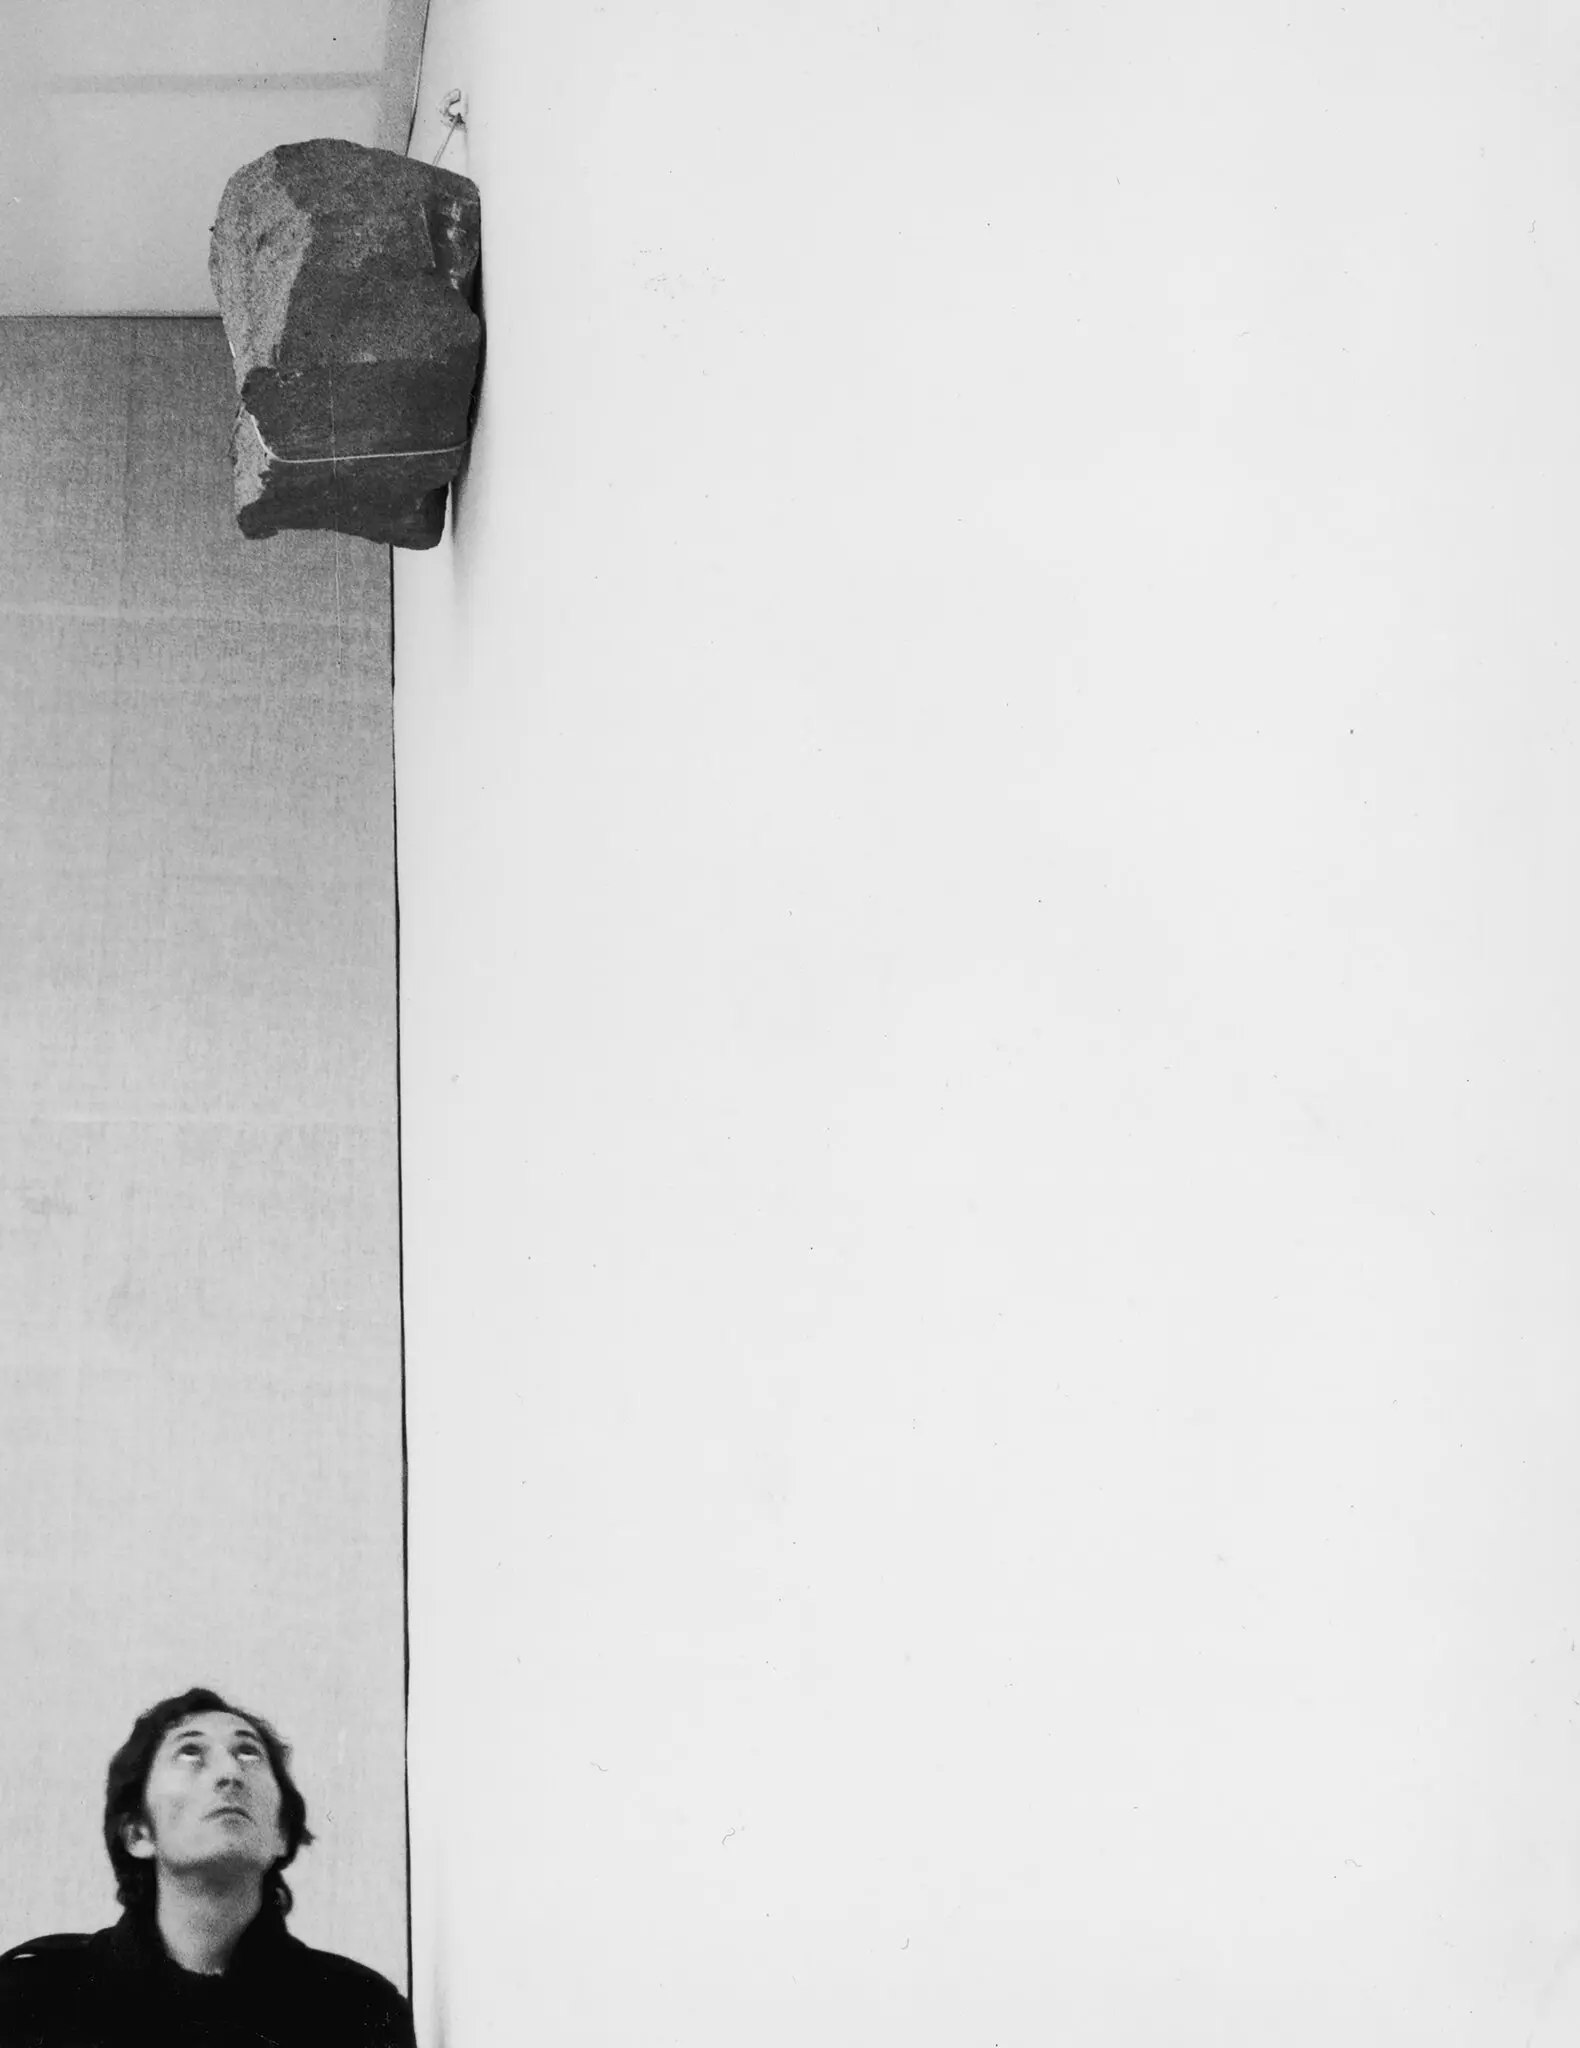 Giovanni Anselmo com a sua obra “Sem título” em 1970. Membro do movimento Arte Povera conhecido pelo seu sentido de humor e provocação, muitas vezes justapôs dois valores nocionalmente opostos. (Crédito da fotografia: Paolo Mussat Sartor, através da Galeria Marian Goodman)